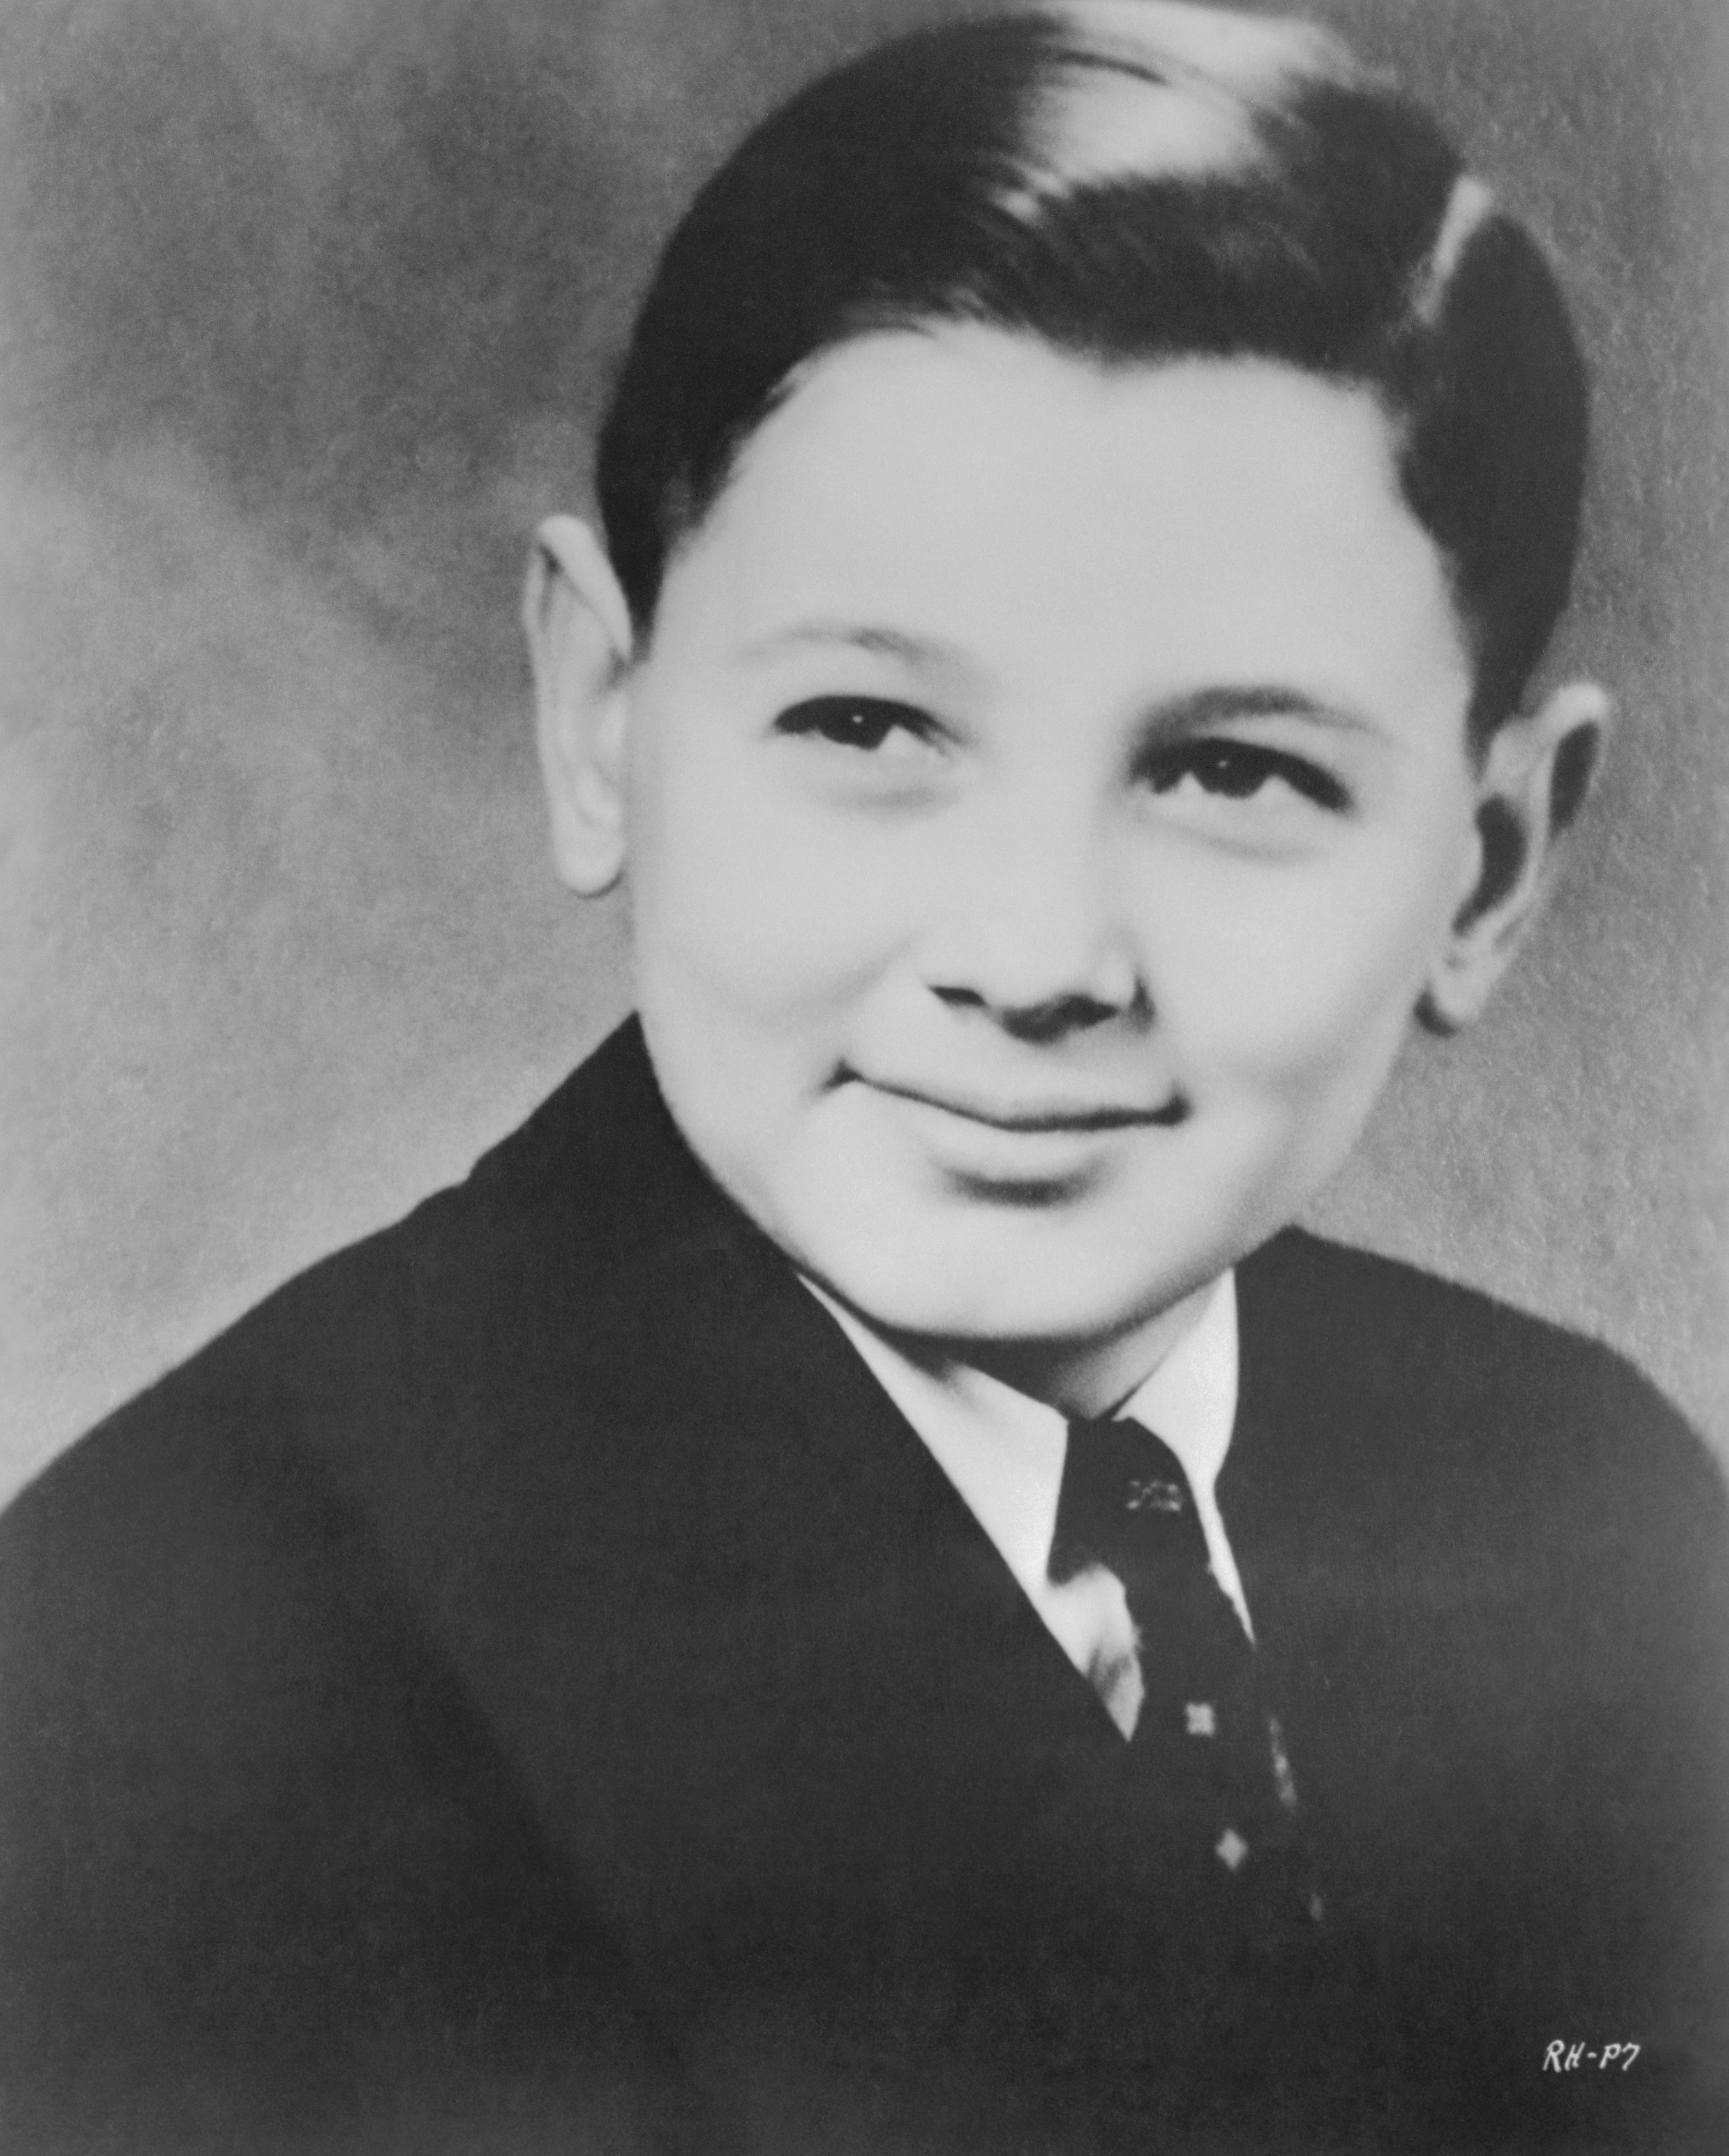 Roy Harold Scherer a los 13 años. | Foto: Getty Images